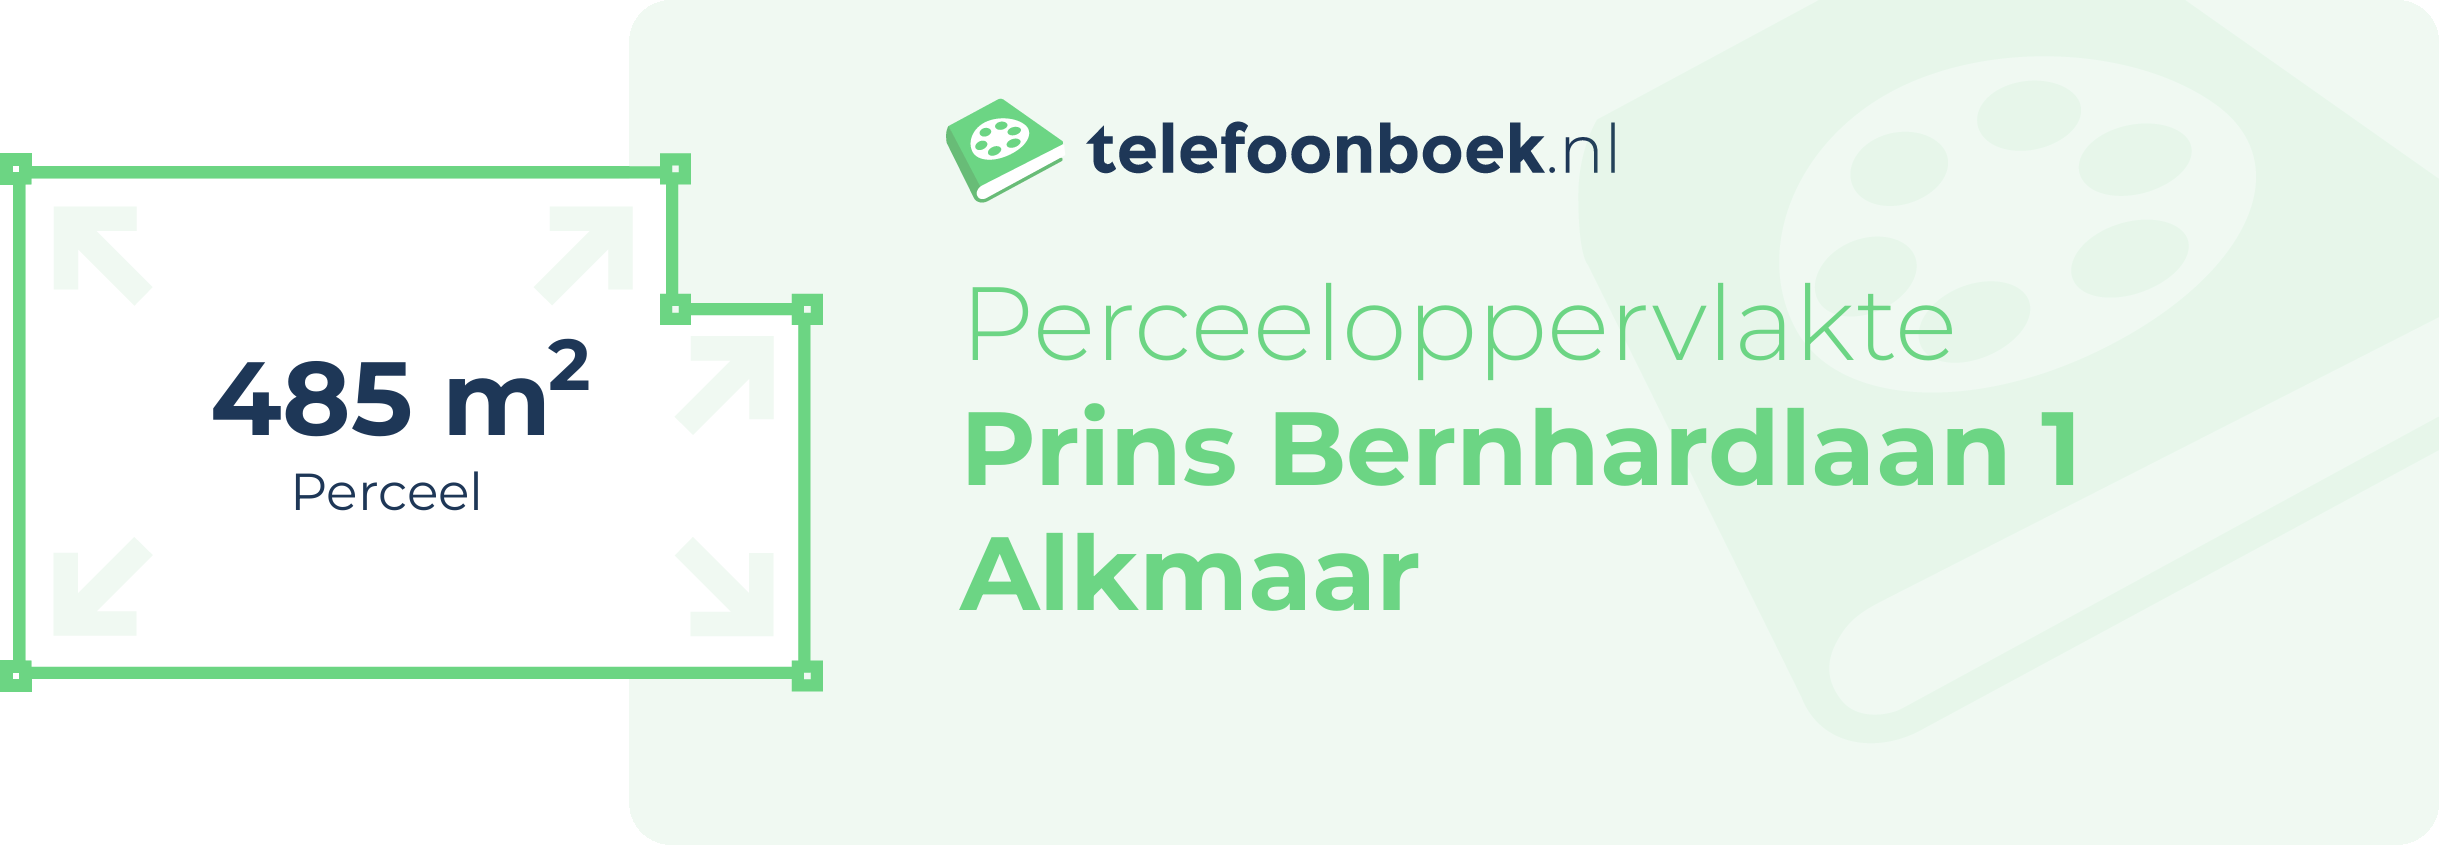 Perceeloppervlakte Prins Bernhardlaan 1 Alkmaar